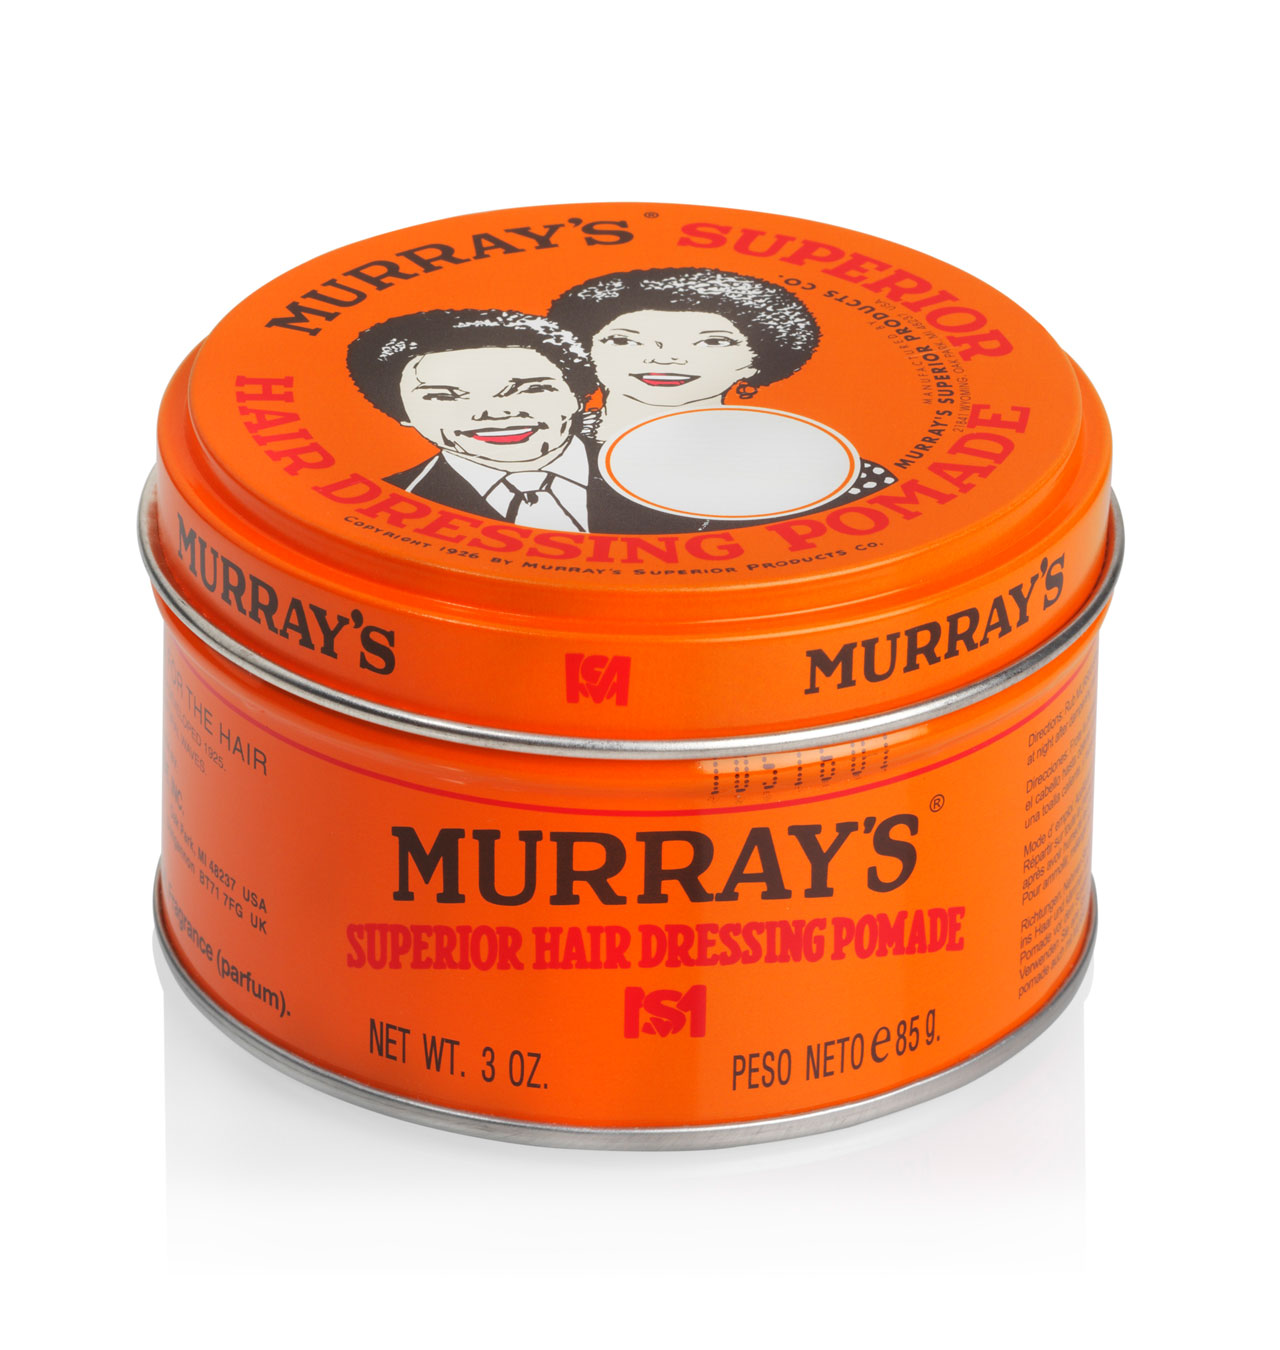 murrays-3901-original-pomade